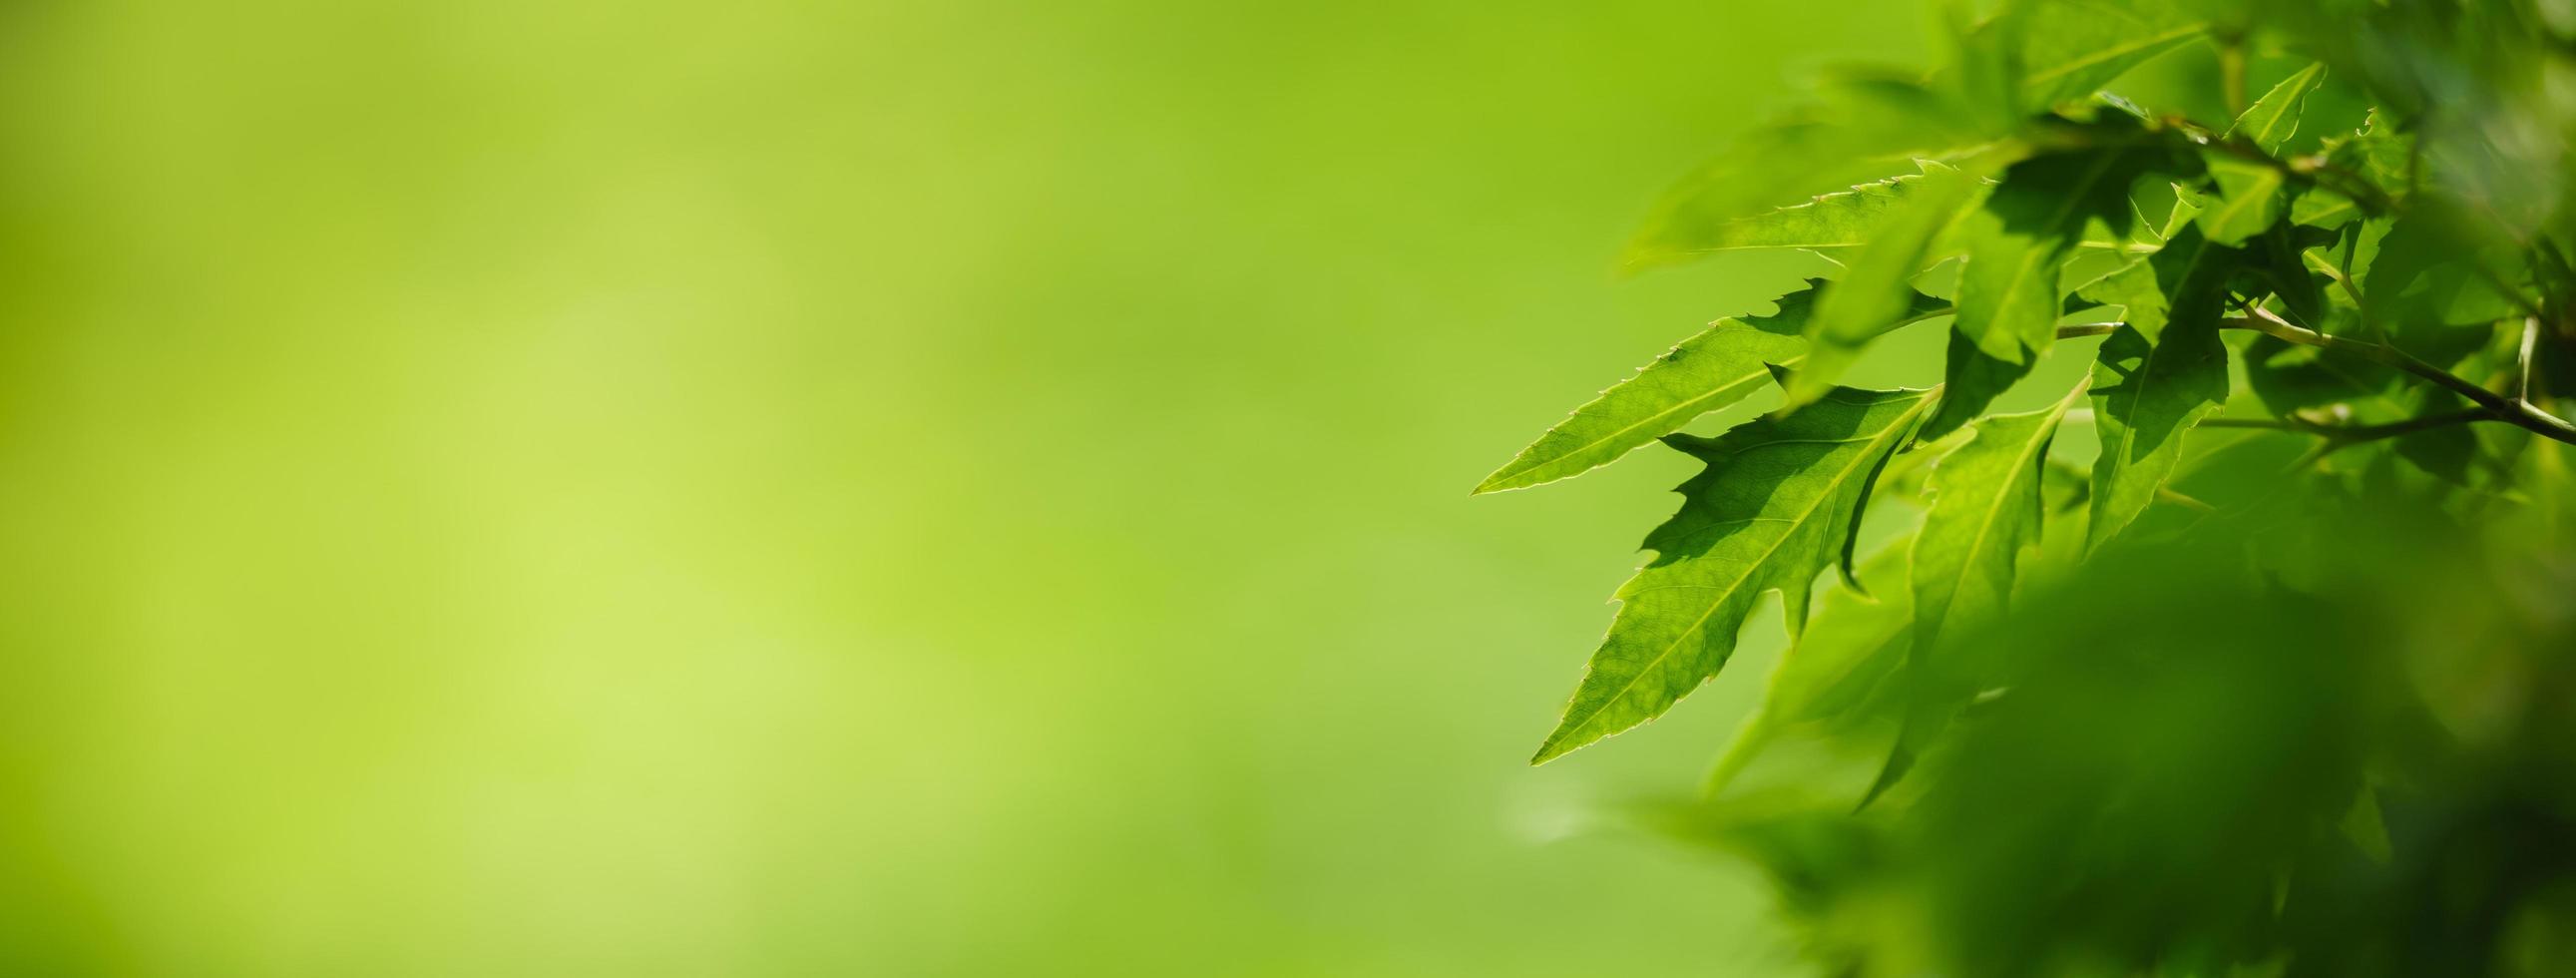 close-up van prachtige natuur weergave groen blad op wazig groen achtergrond in tuin met kopie ruimte gebruiken als achtergrond voorblad concept. foto